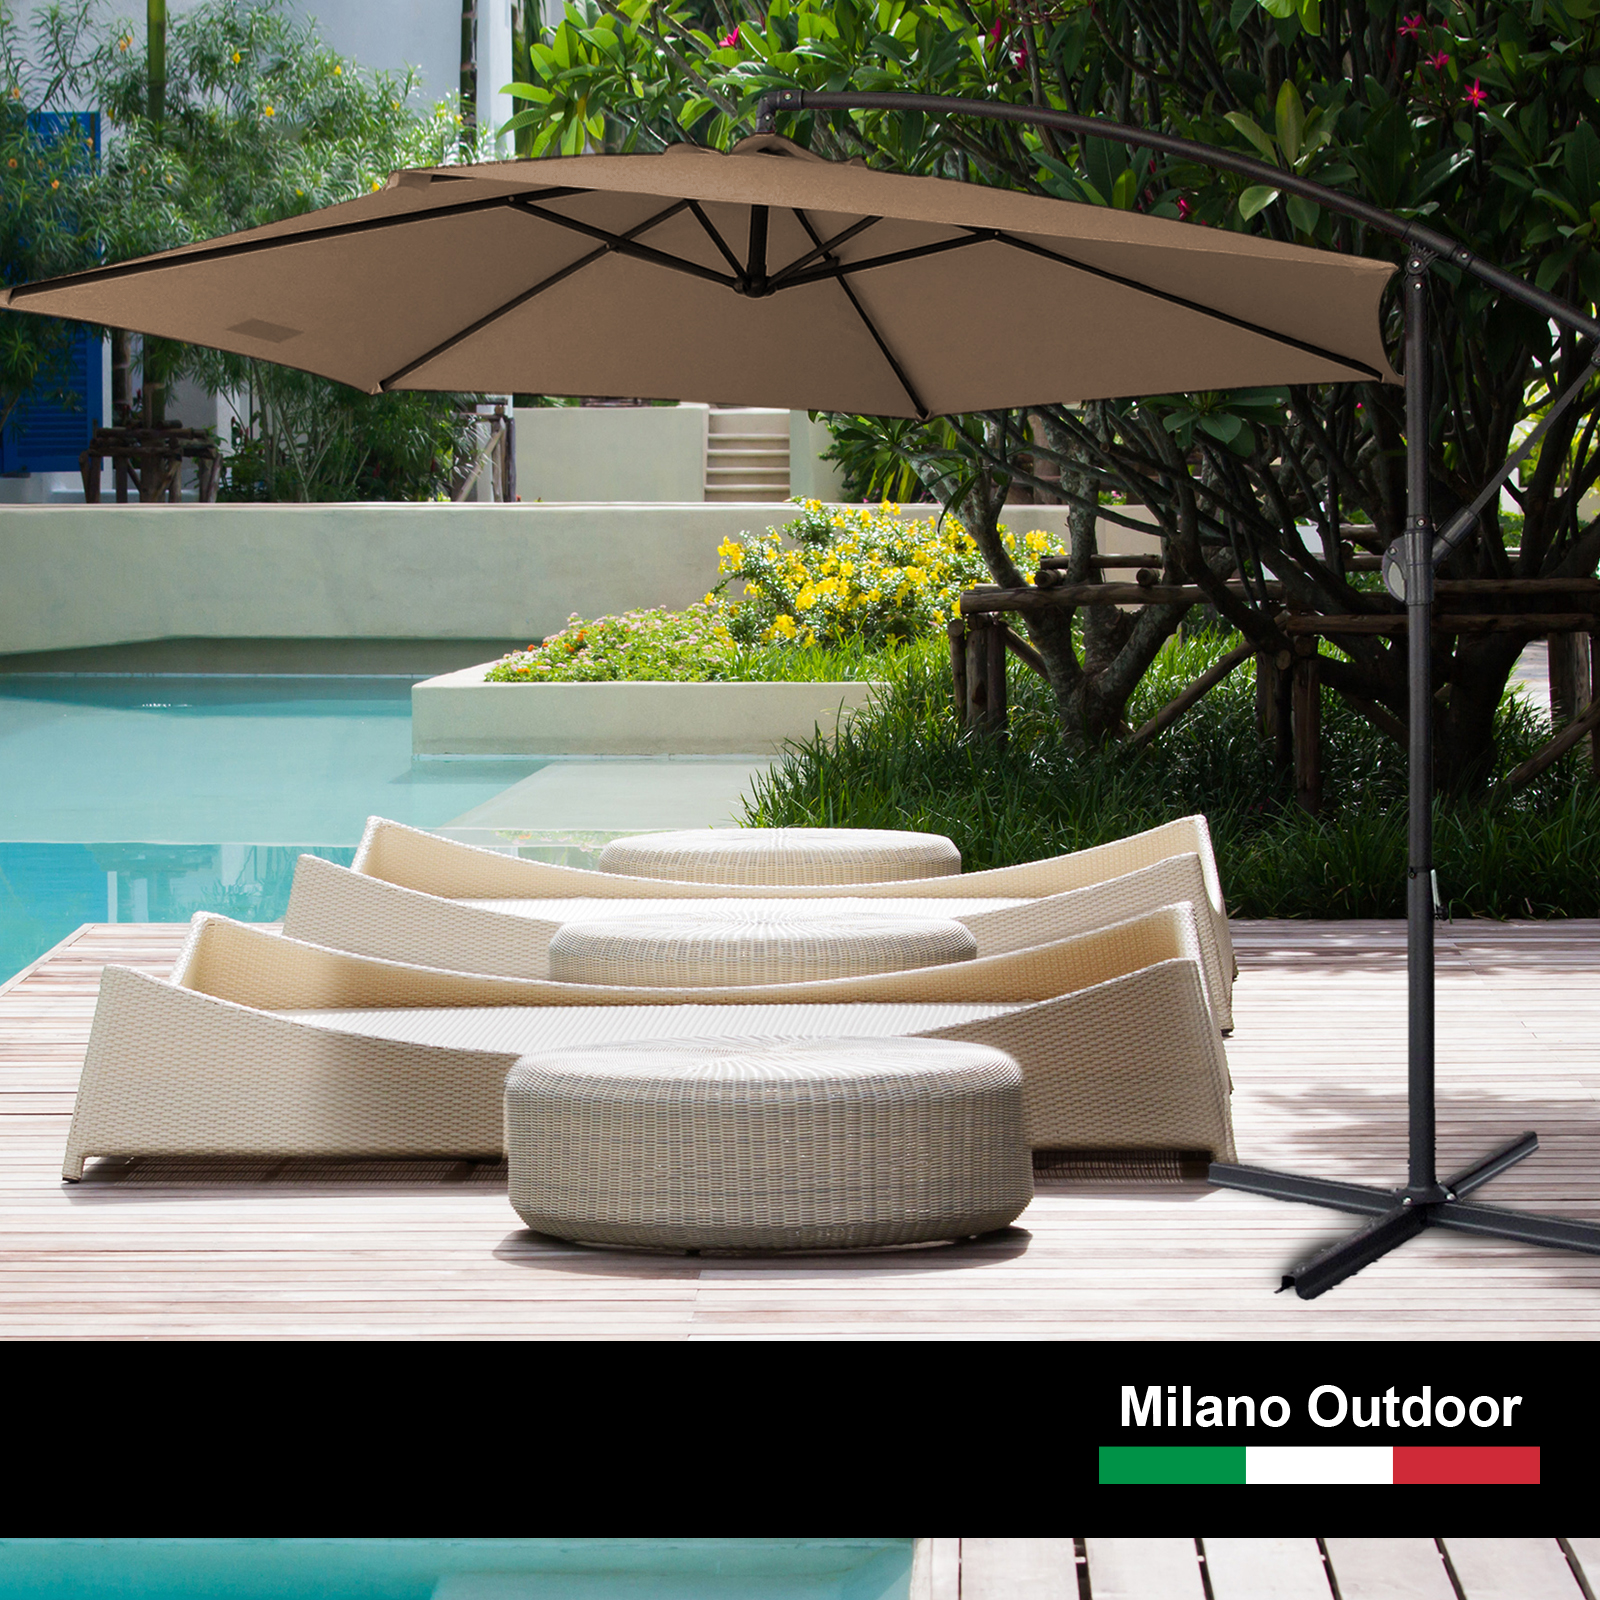 Milano 3M Outdoor Umbrella Cantilever With Protective Cover Patio Garden Shade – Latte